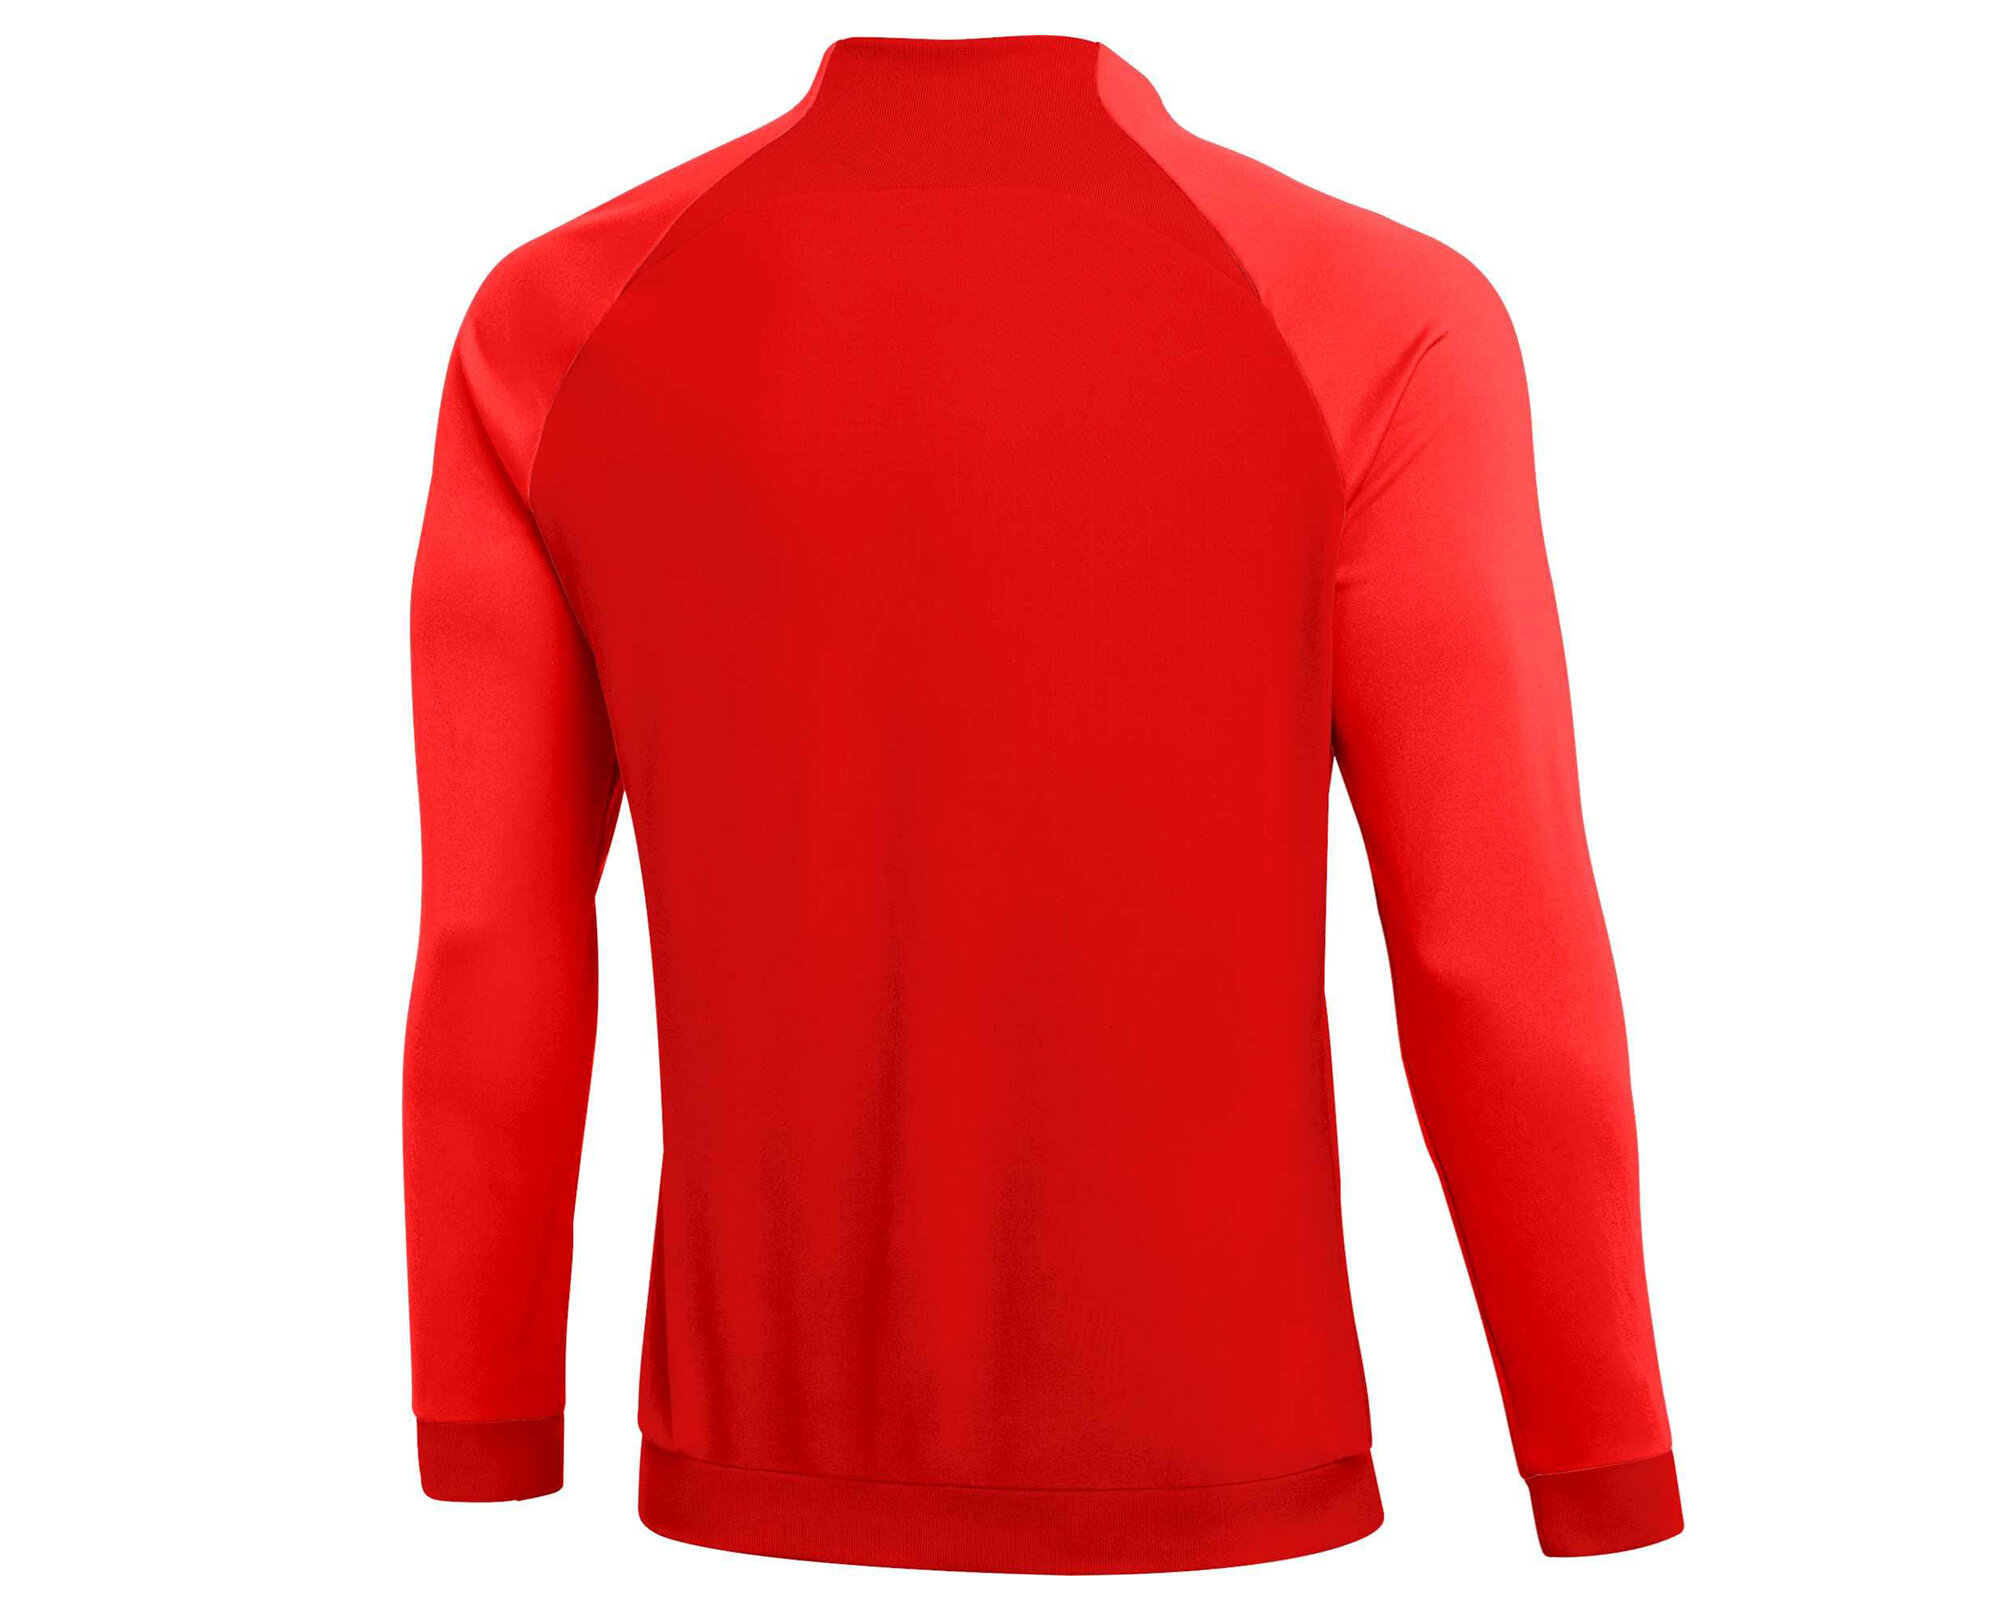 Nike Dri-Fit Academy Pro Erkek Kırmızı Futbol Ceket (DH9234-657)